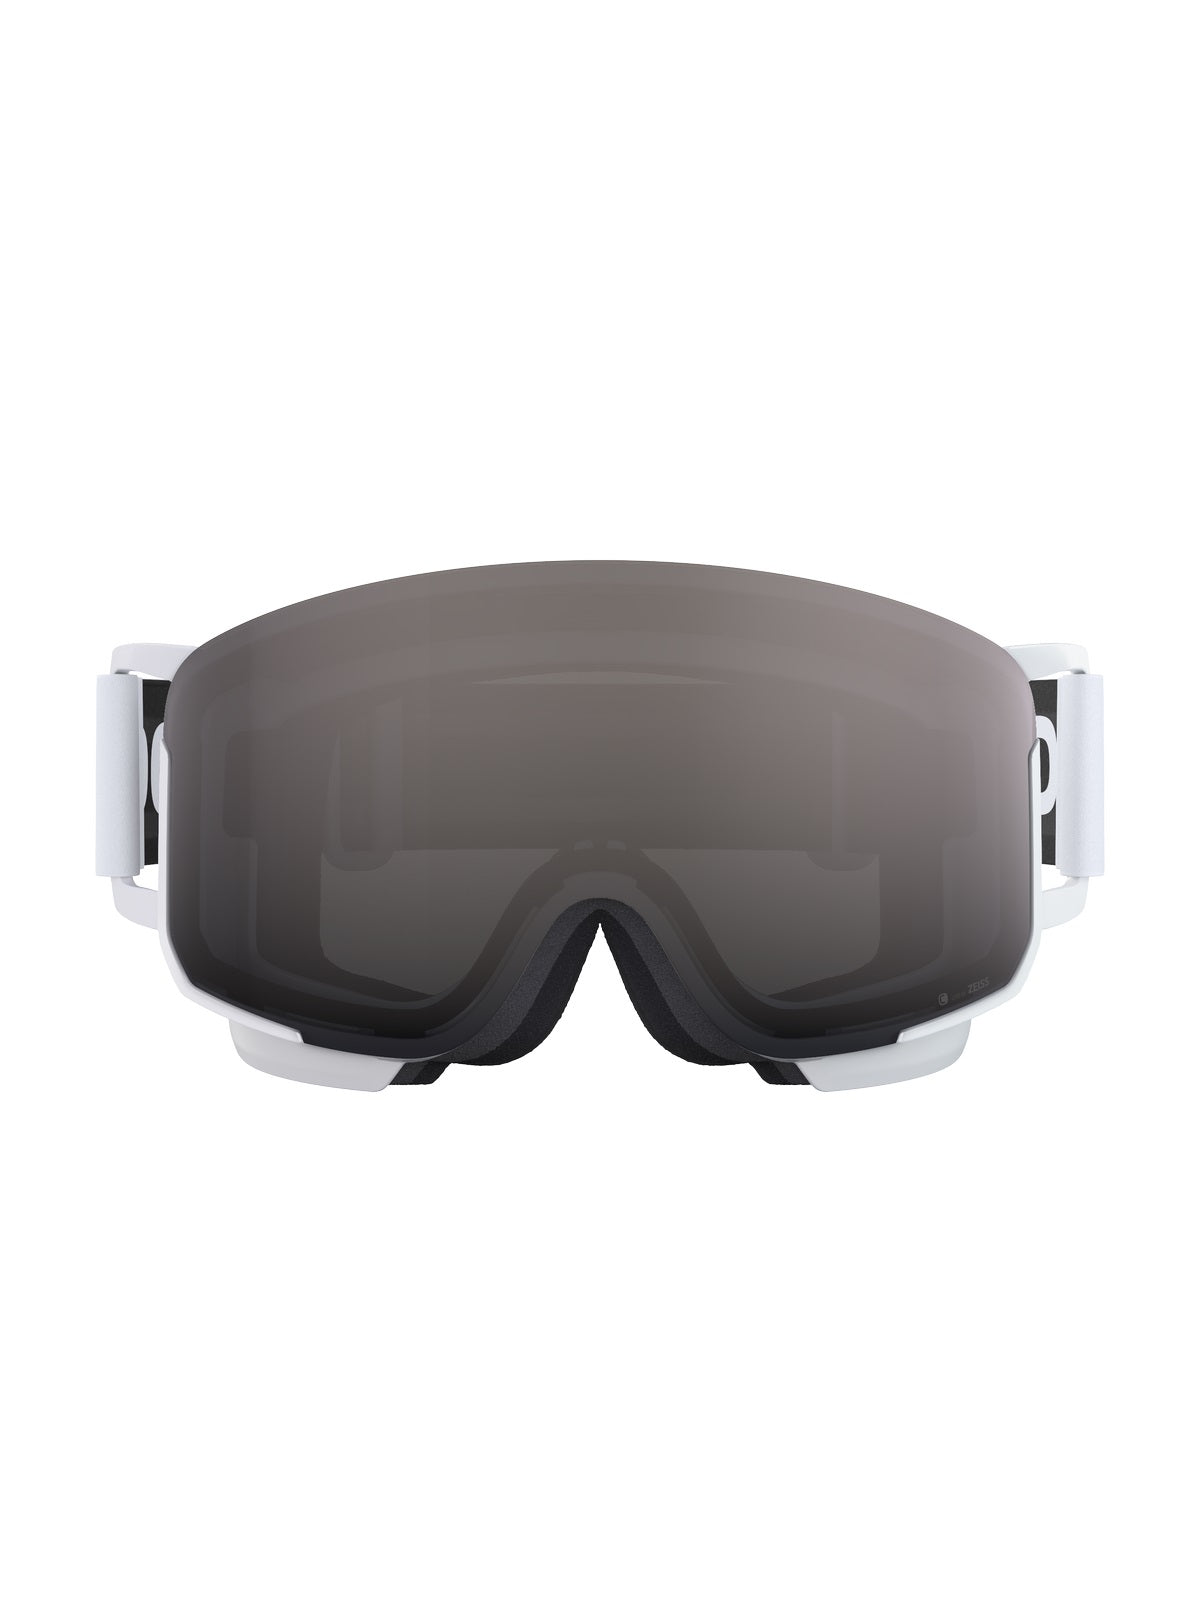 Gogle narciarskie POC Nexal Clarity - Hyd. White/Clarity Define/No Mirror Cat 2